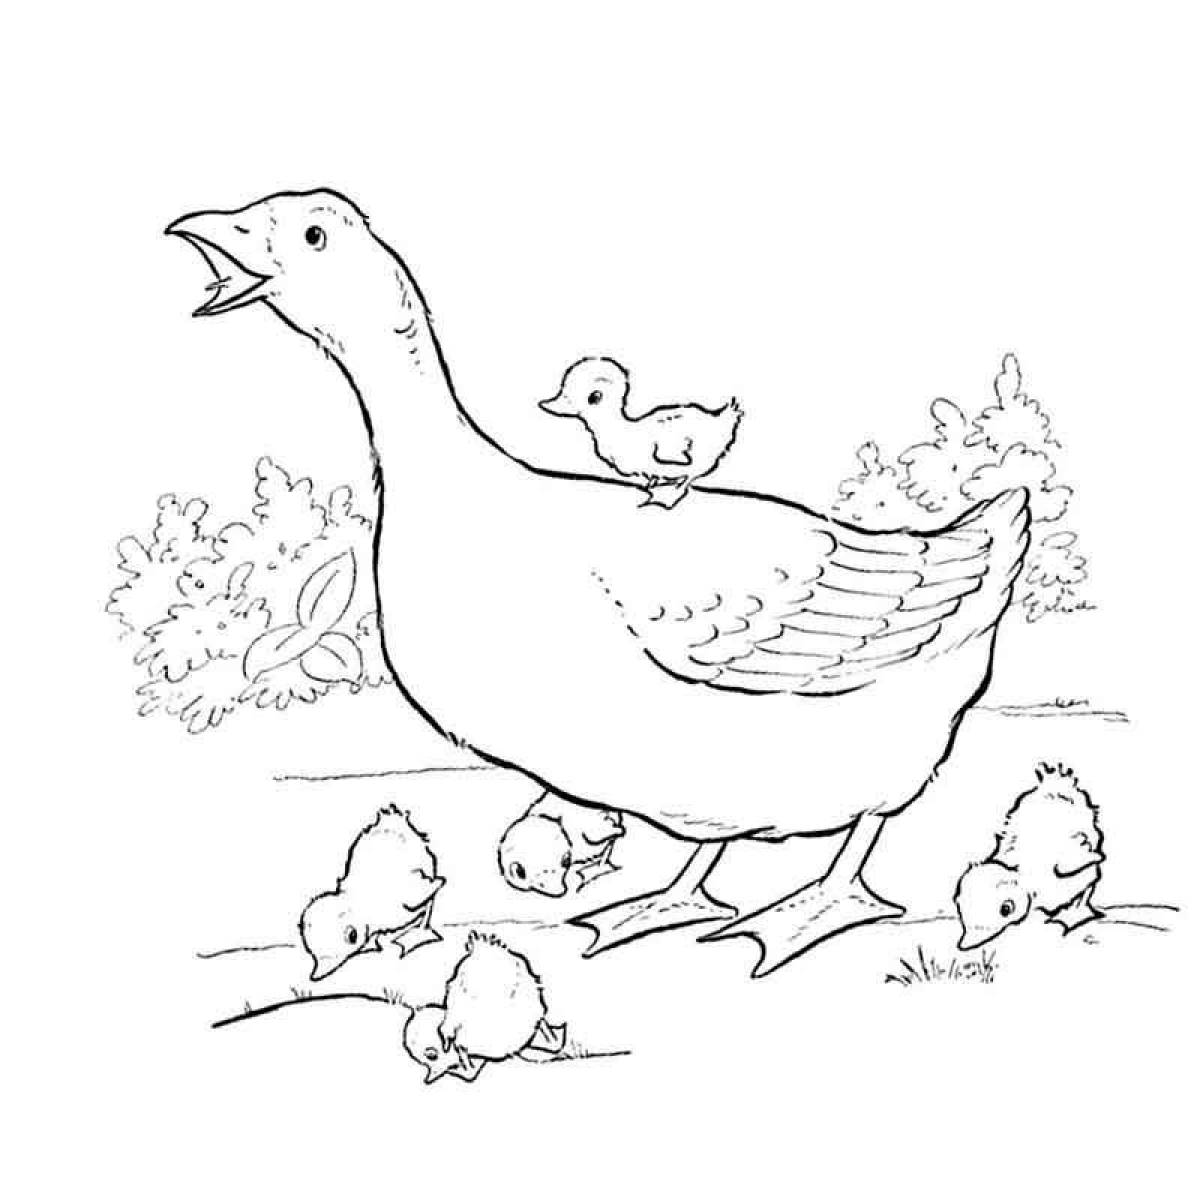 Fun goose coloring book for kids